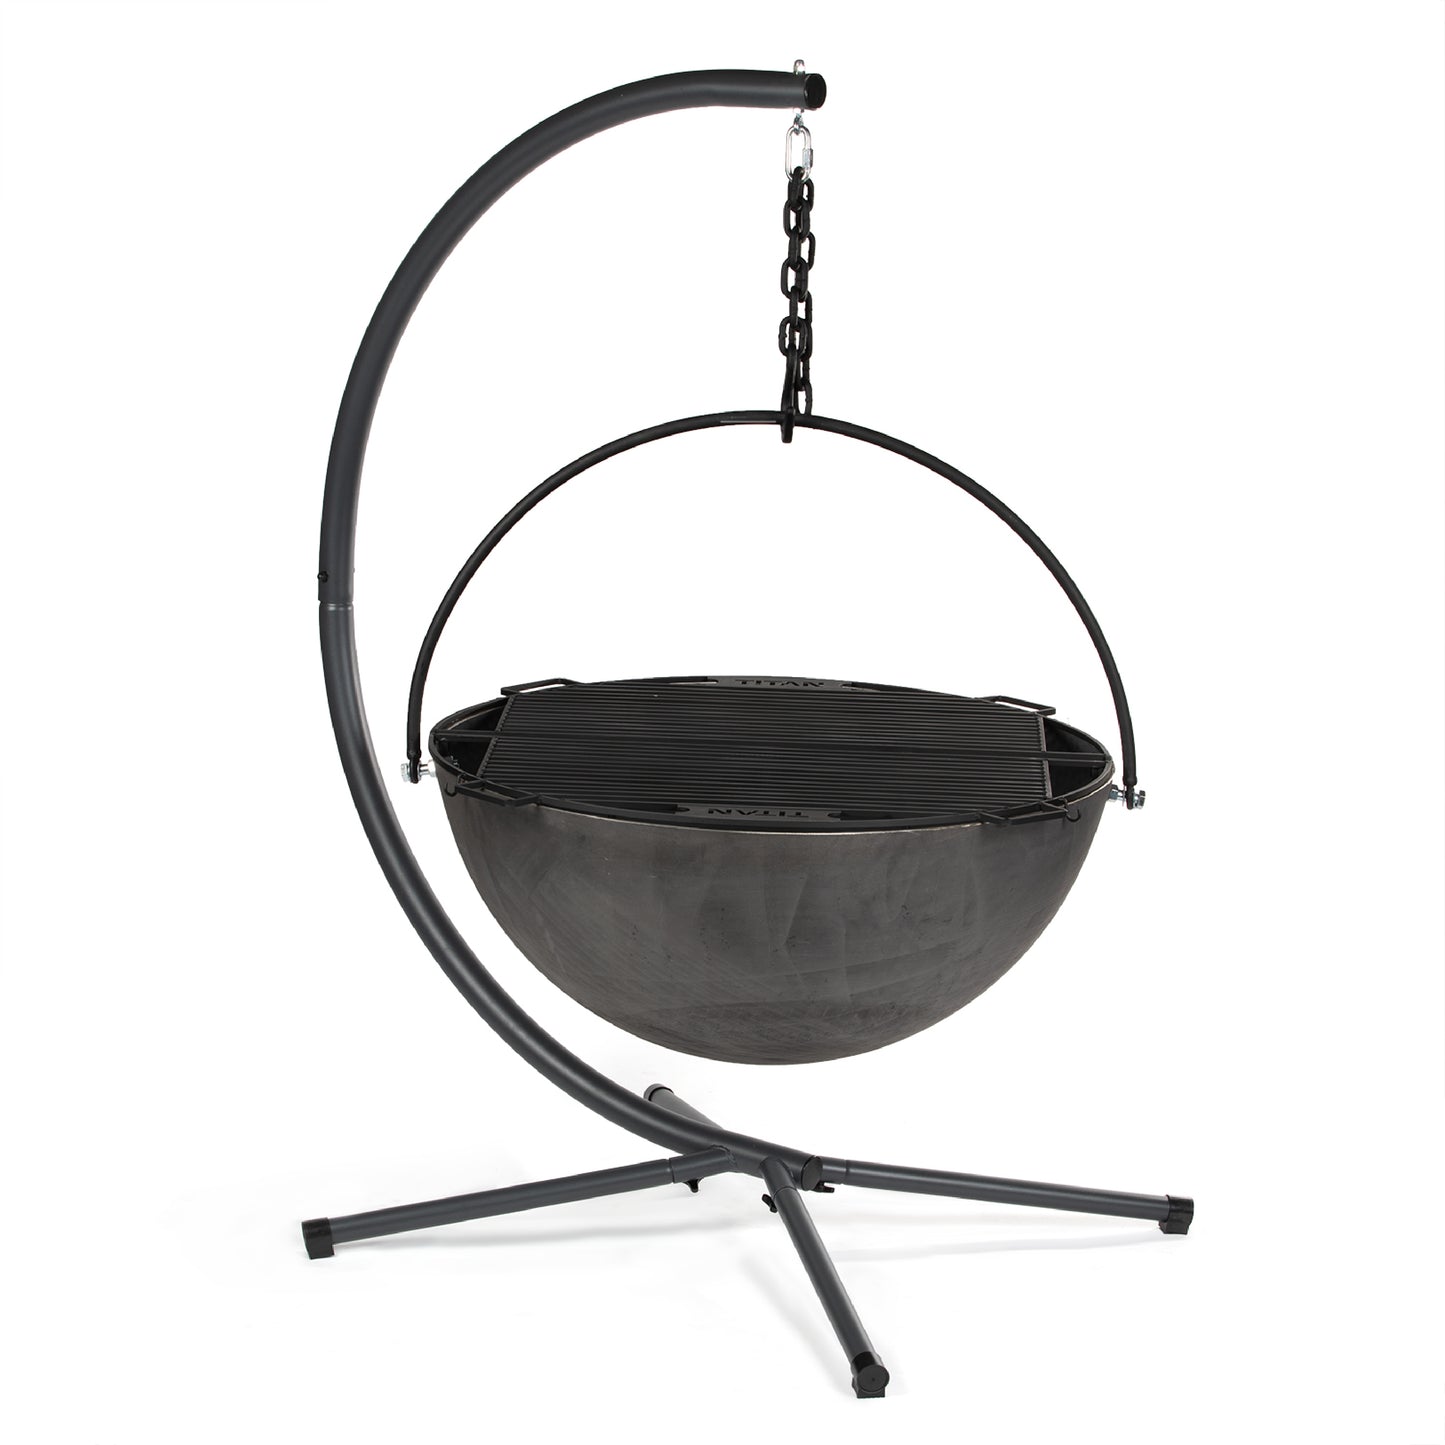 Cauldron Fire Pit Bowls - Cauldron Size: 42” / Optional Cauldron  Stand: Bowl + Stand | 42” / Bowl + Stand - view 31